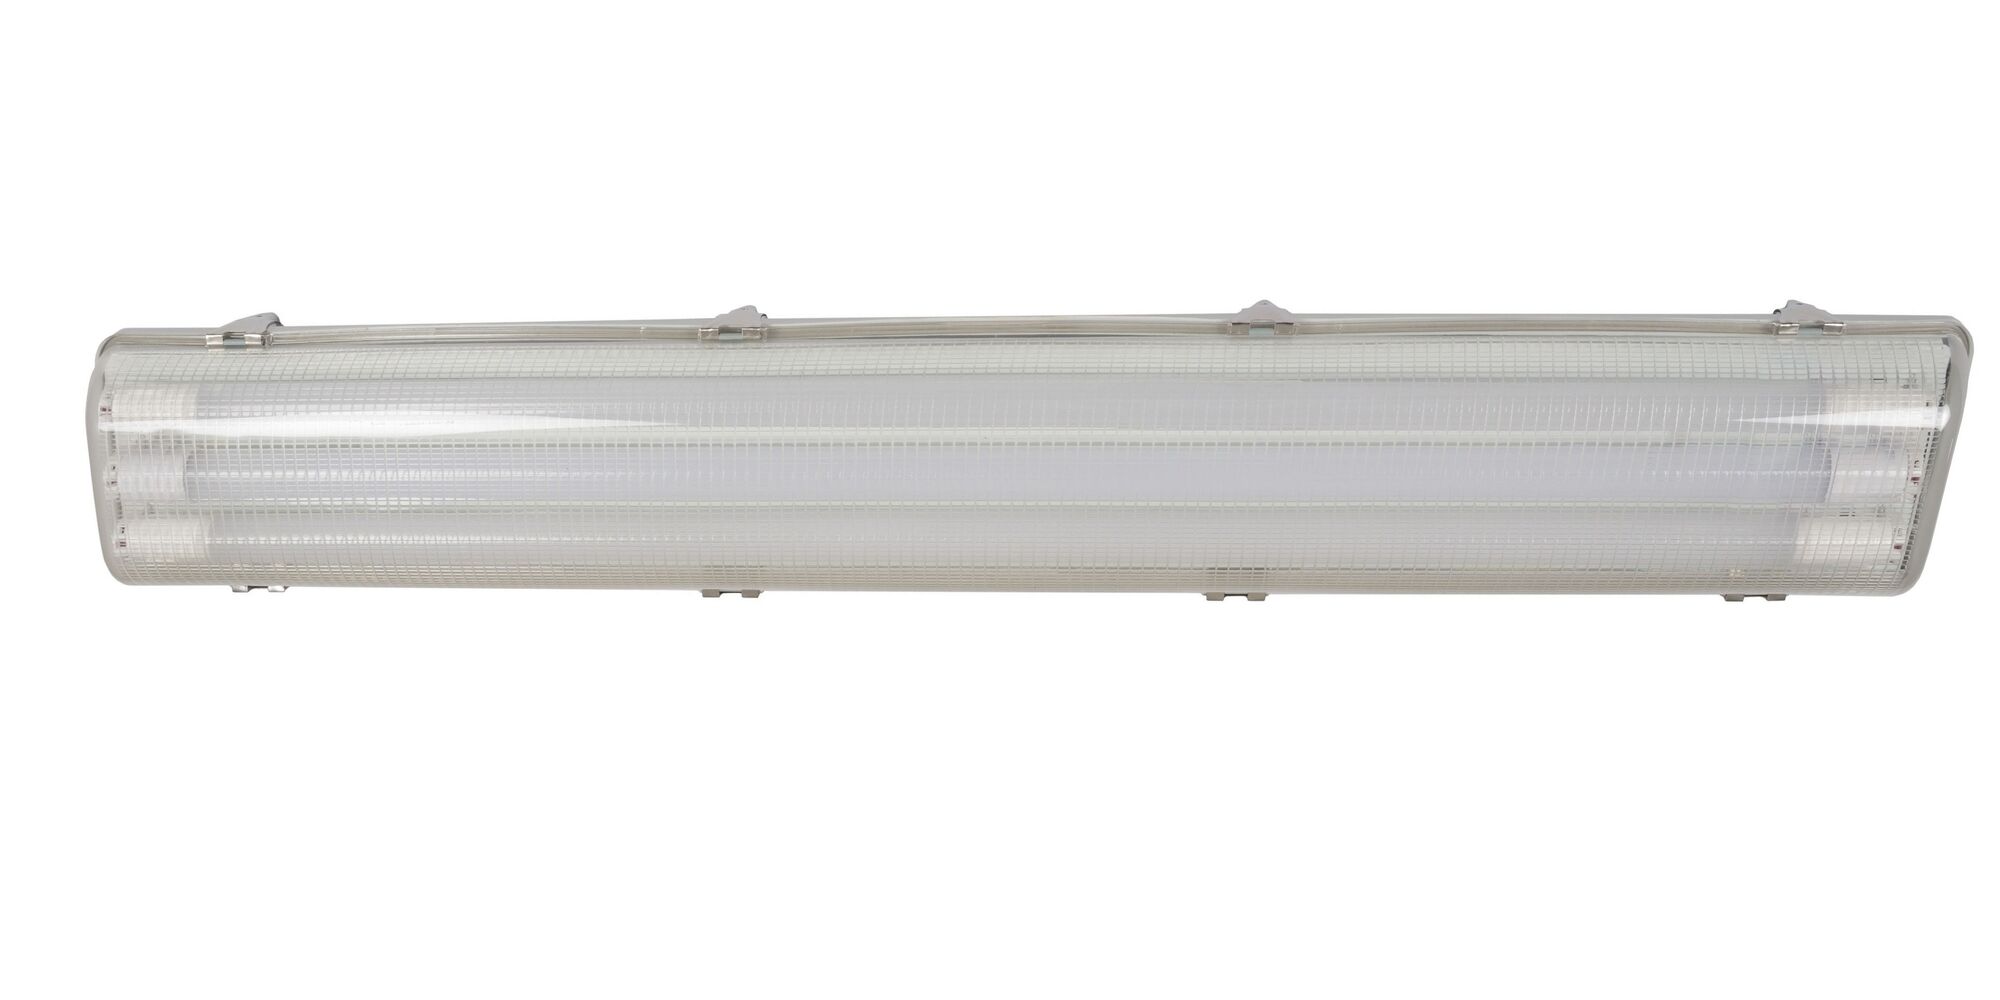 Светильник светодиодный Glerio Line Shell микропризма 24 Вт 2793 Лм IP65